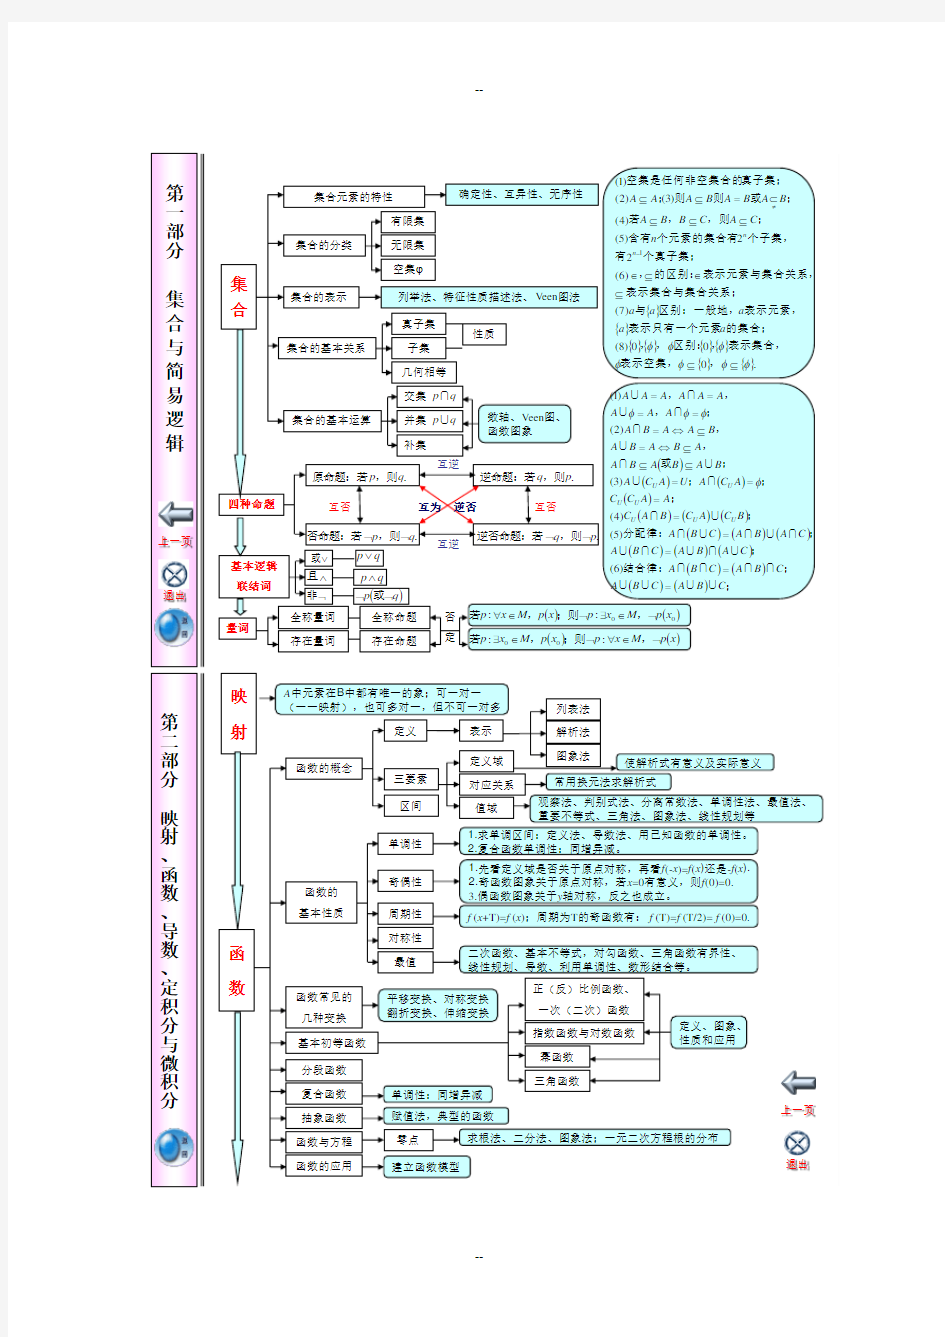 江苏省高中数学知识点体系框架超全超完美